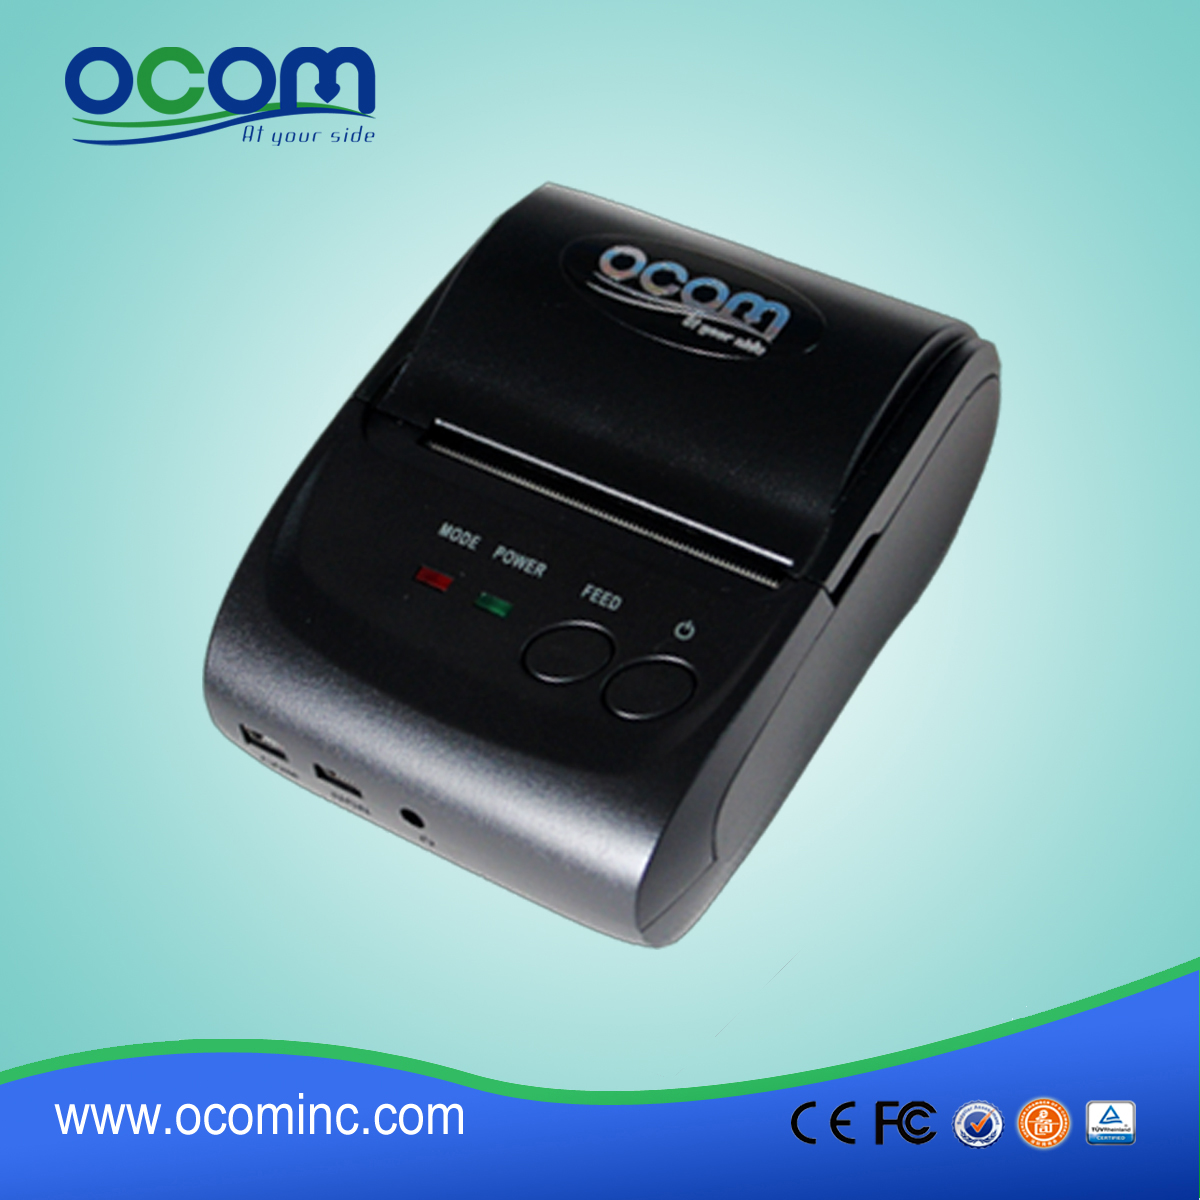 OCPP-M05 58-мм портативный термоприемный принтер